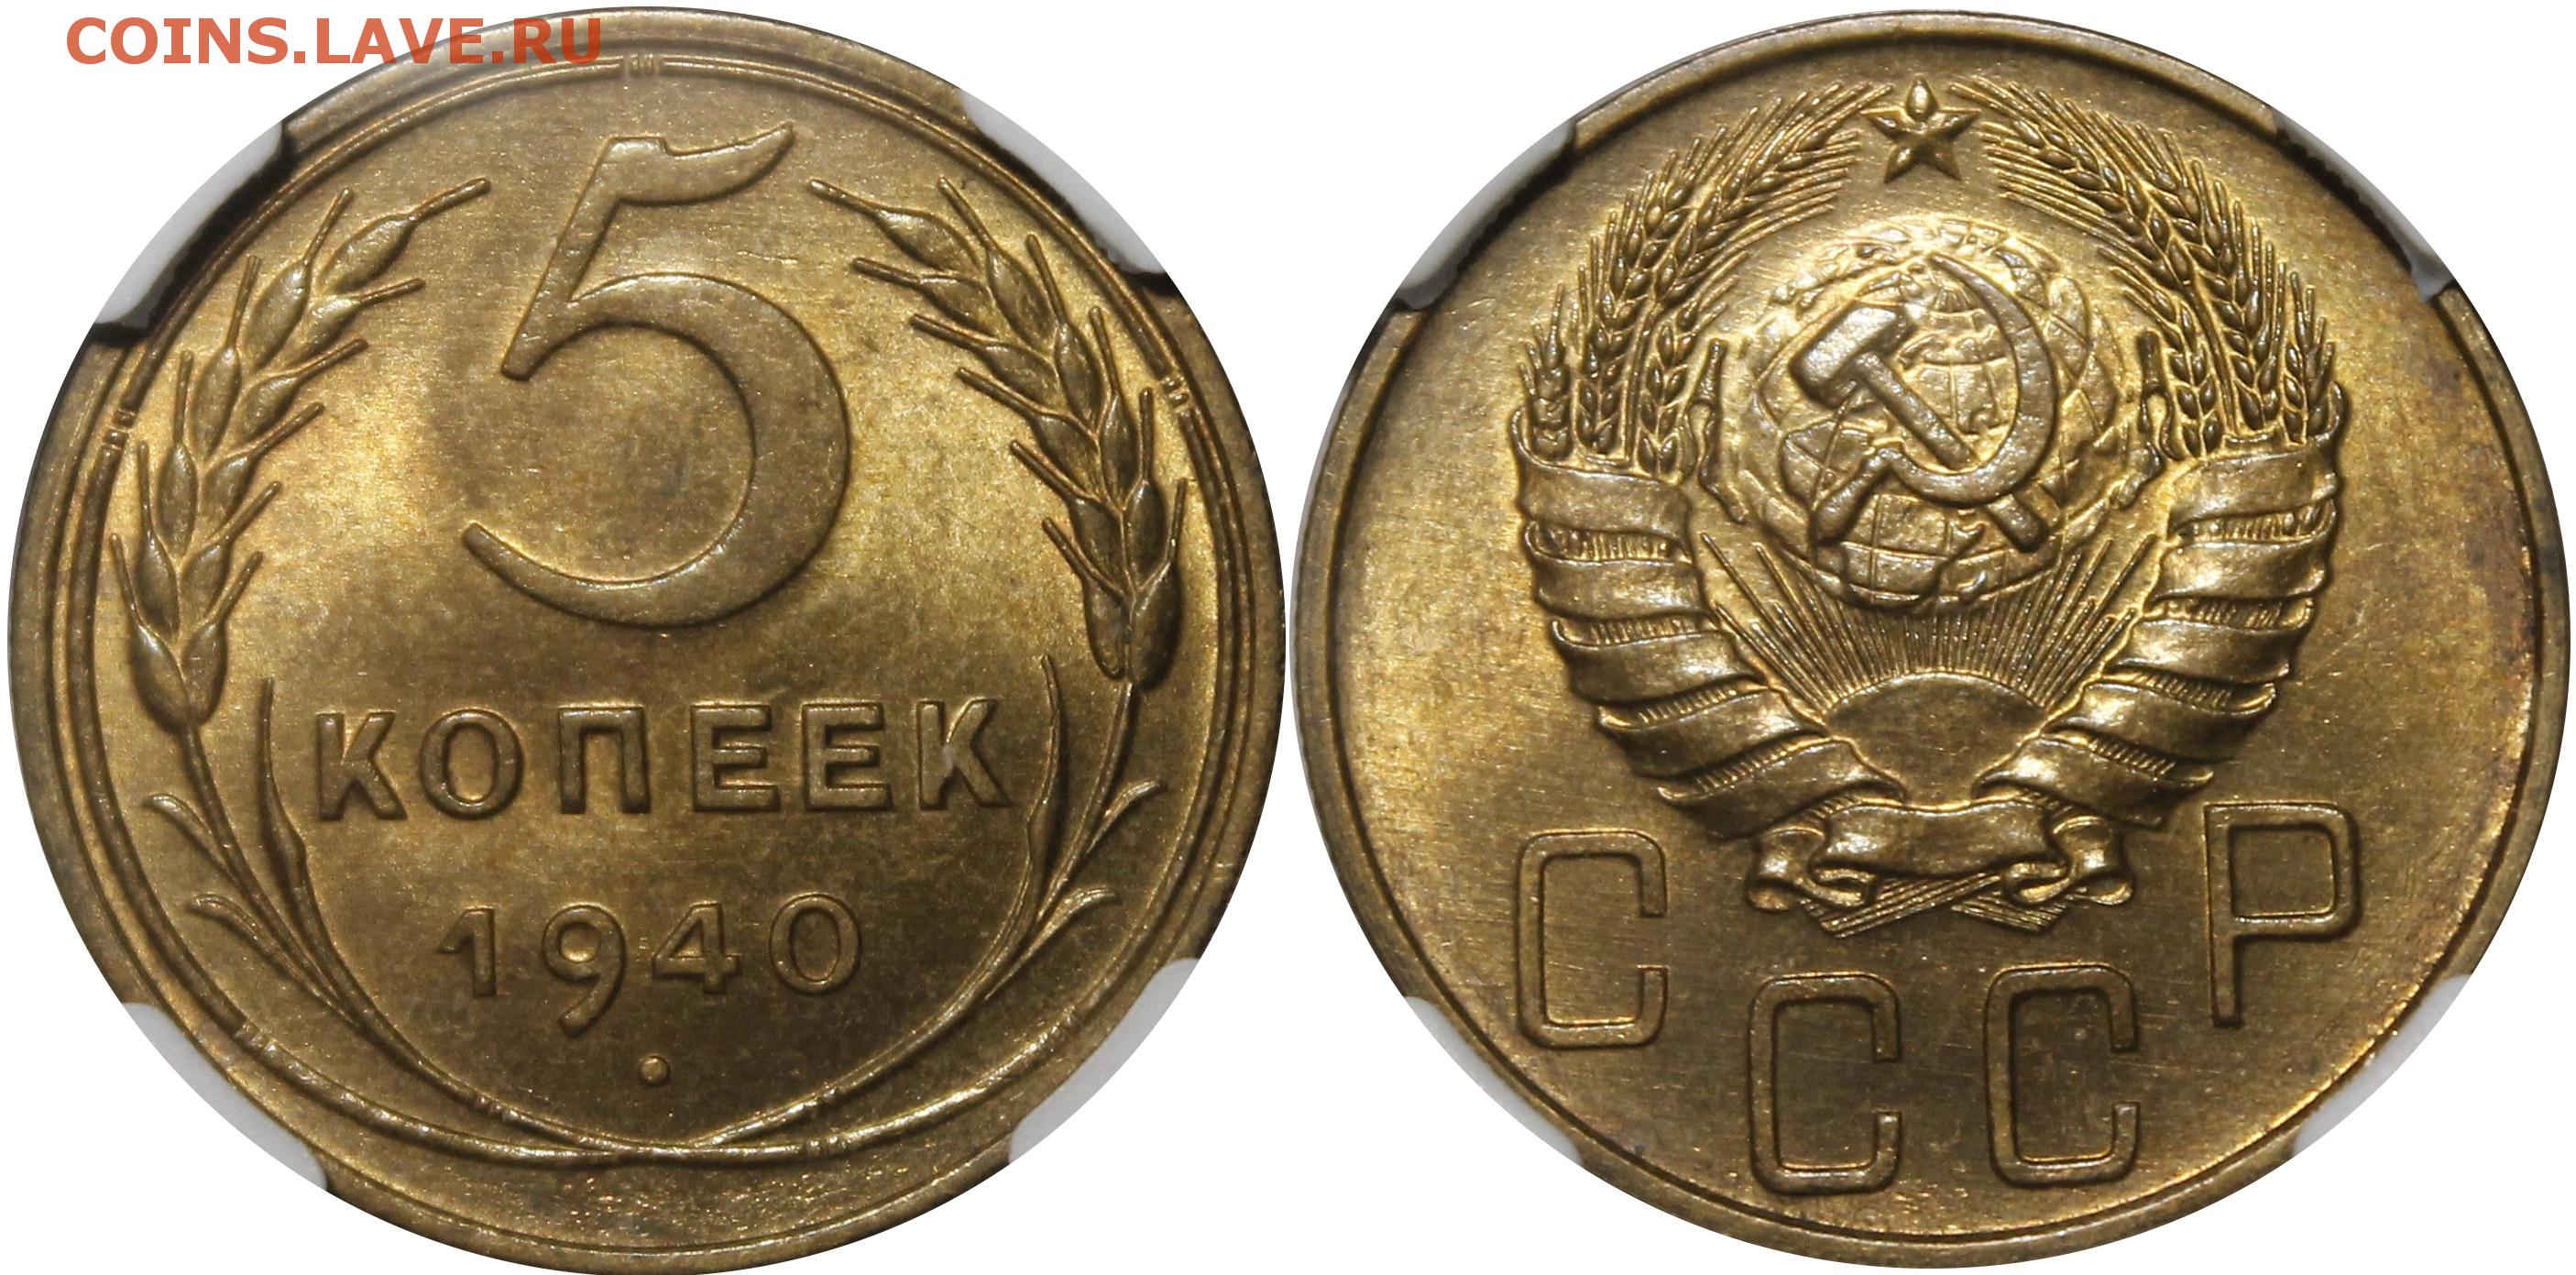 5 копеек 1940 цена. 5 Копеек 1940 года. 5 Копеек СССР 1940. Монета 15 копеек 1940 года. 3 Копейки 1940.